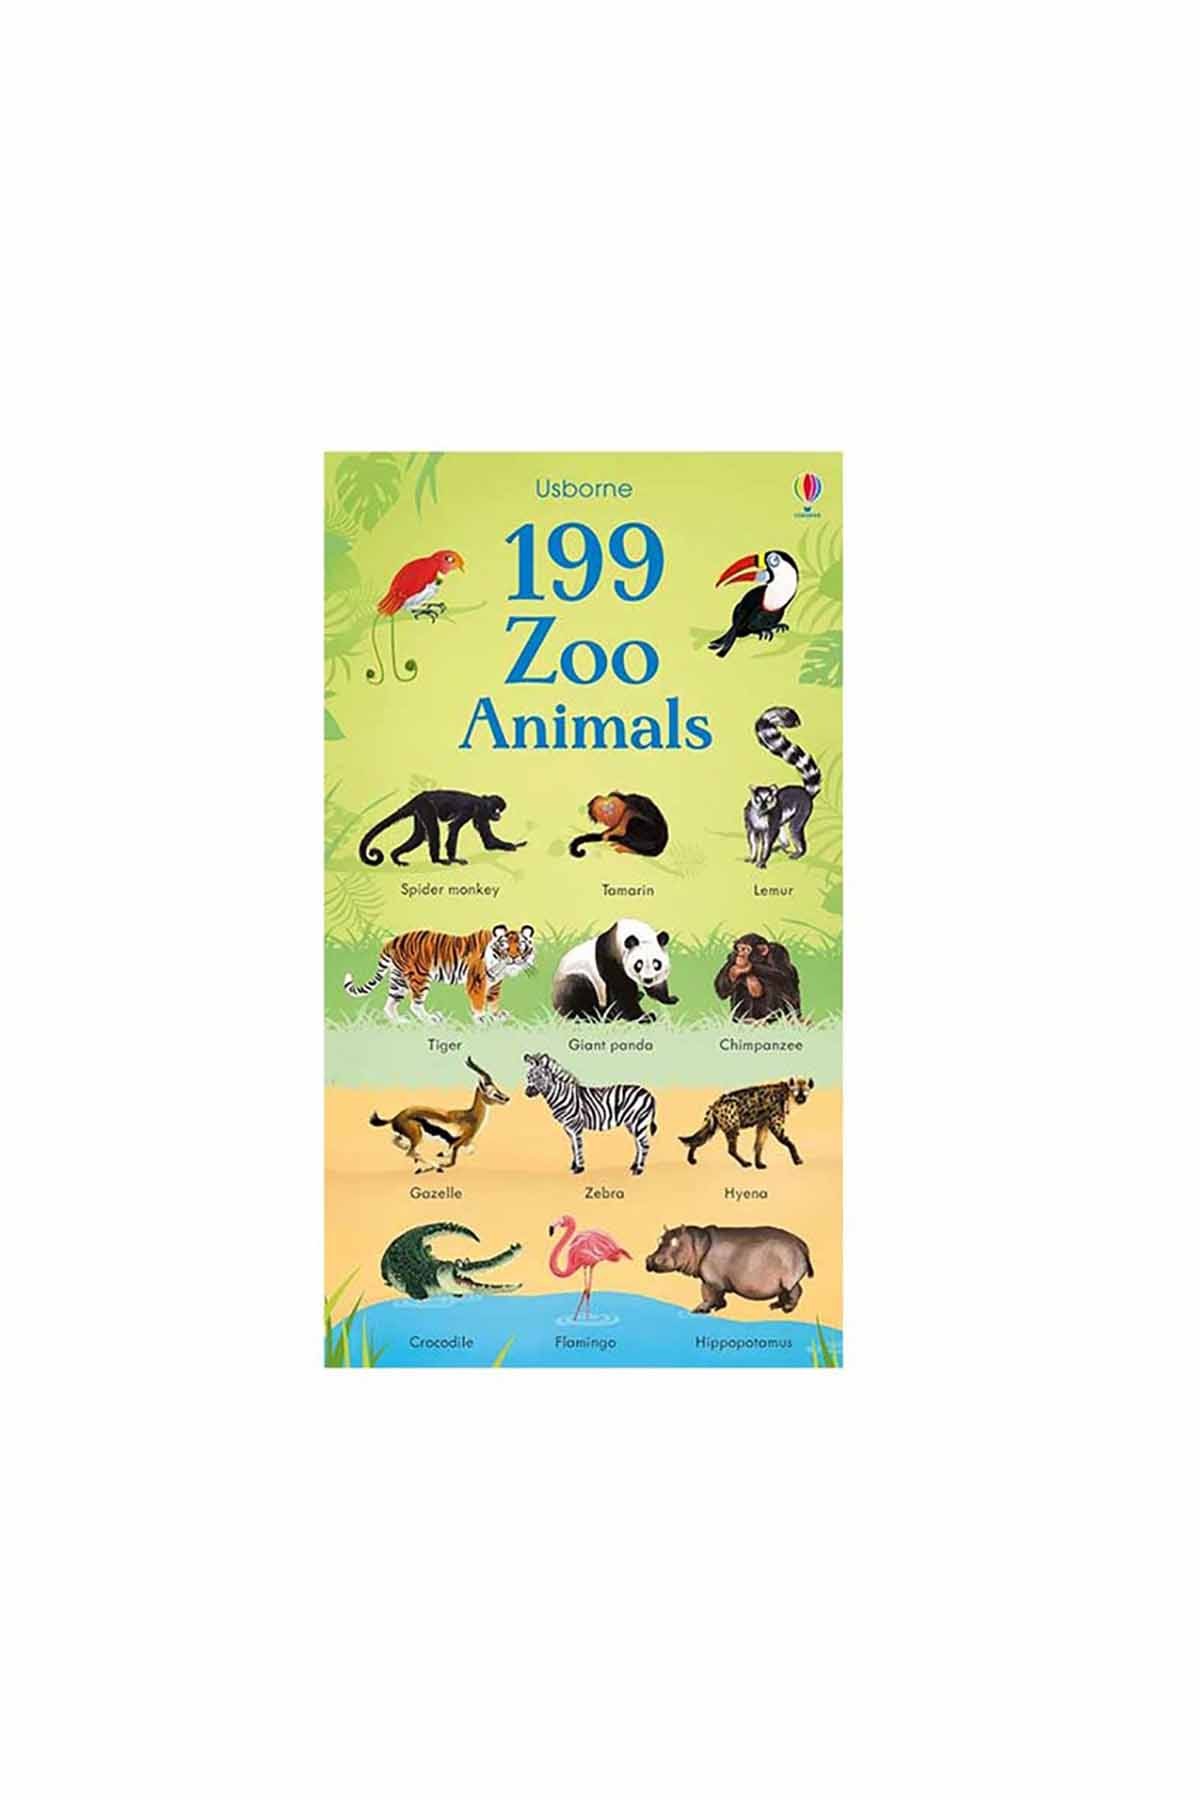 The Usborne - 199 Zoo Animals